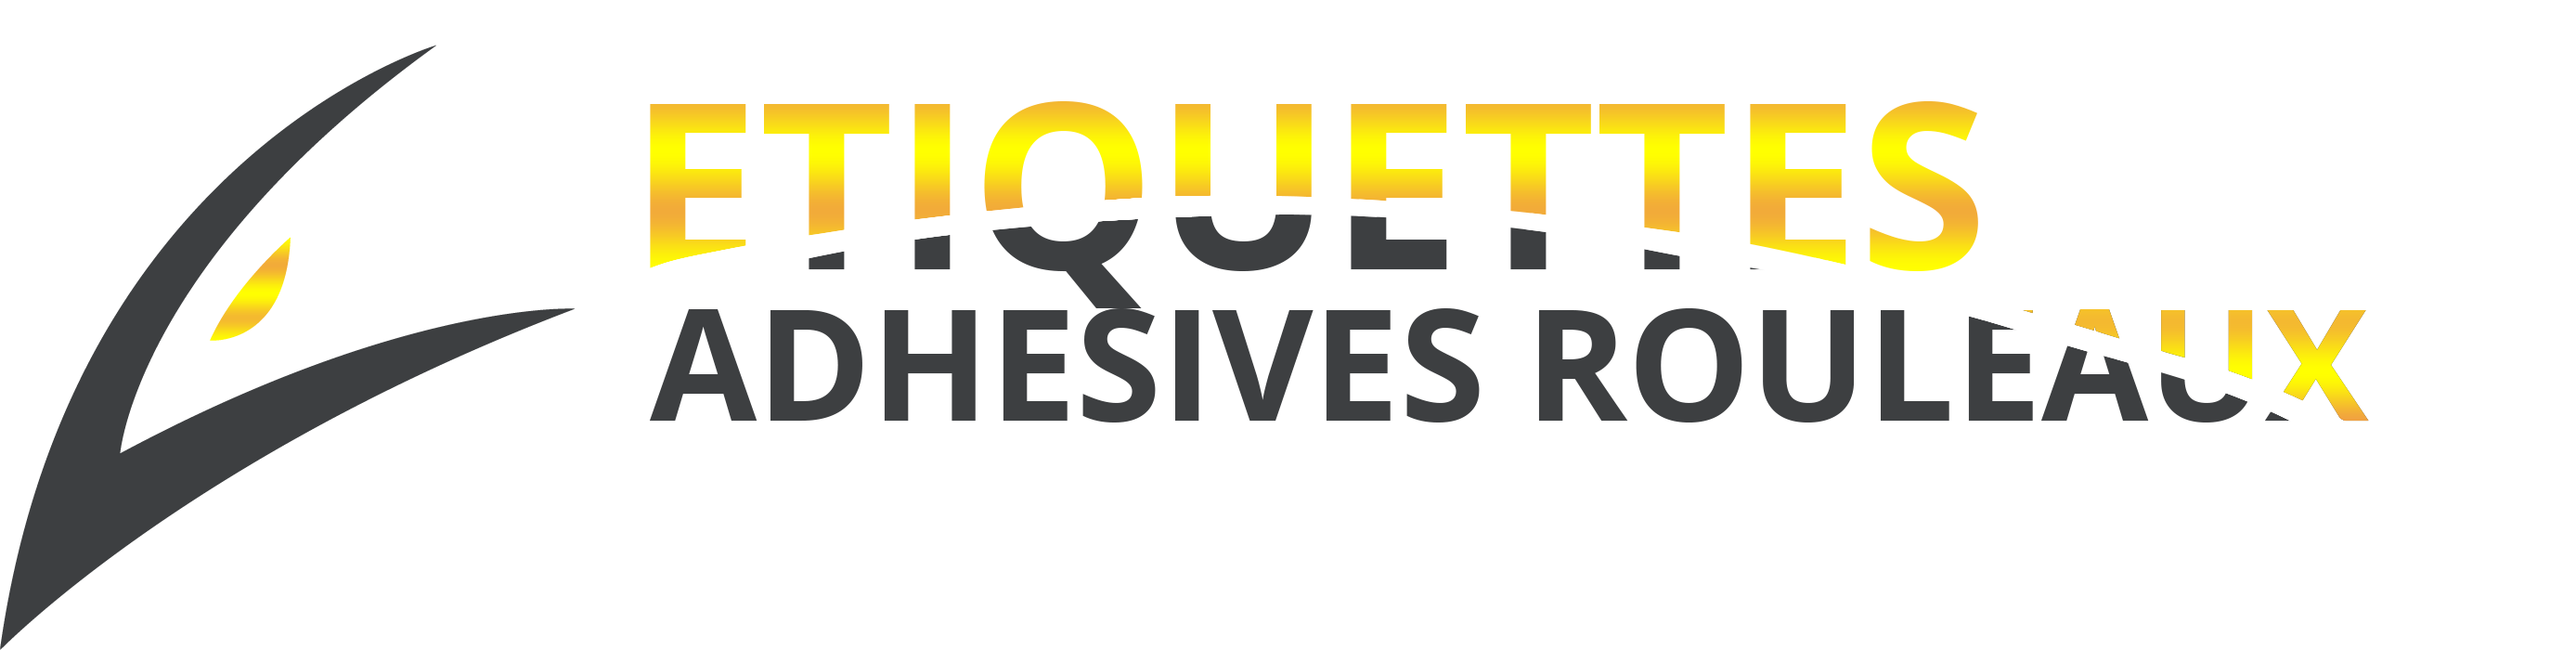 logo etiquettes adhesives rouleaux